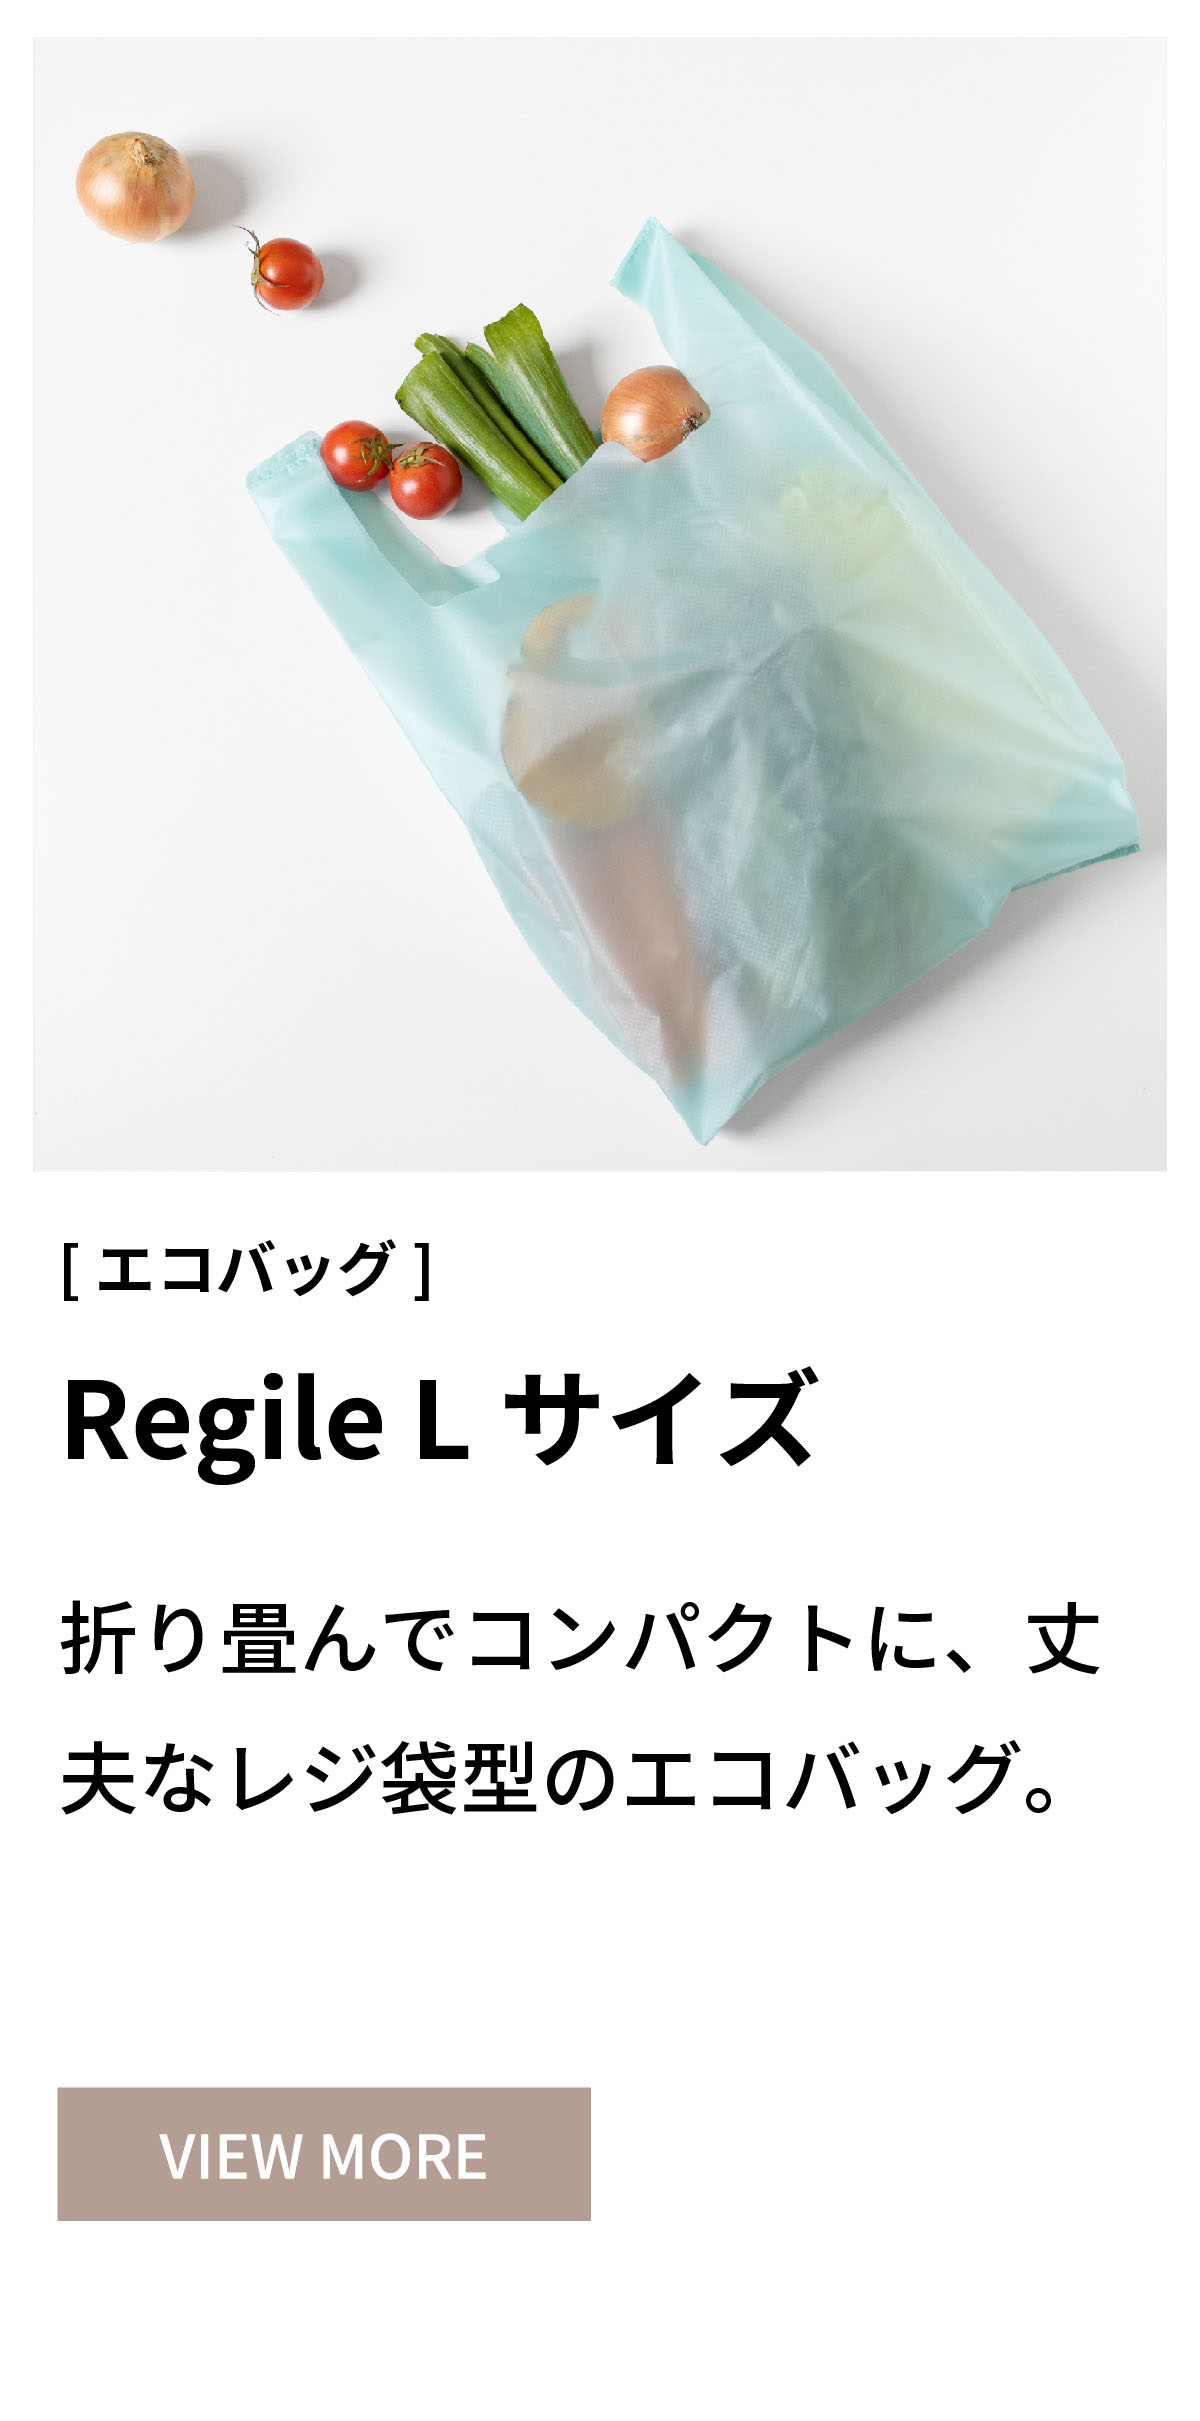 エコバッグ L Regile レジル レジ袋 コーデュラ 耐水 コンパクト